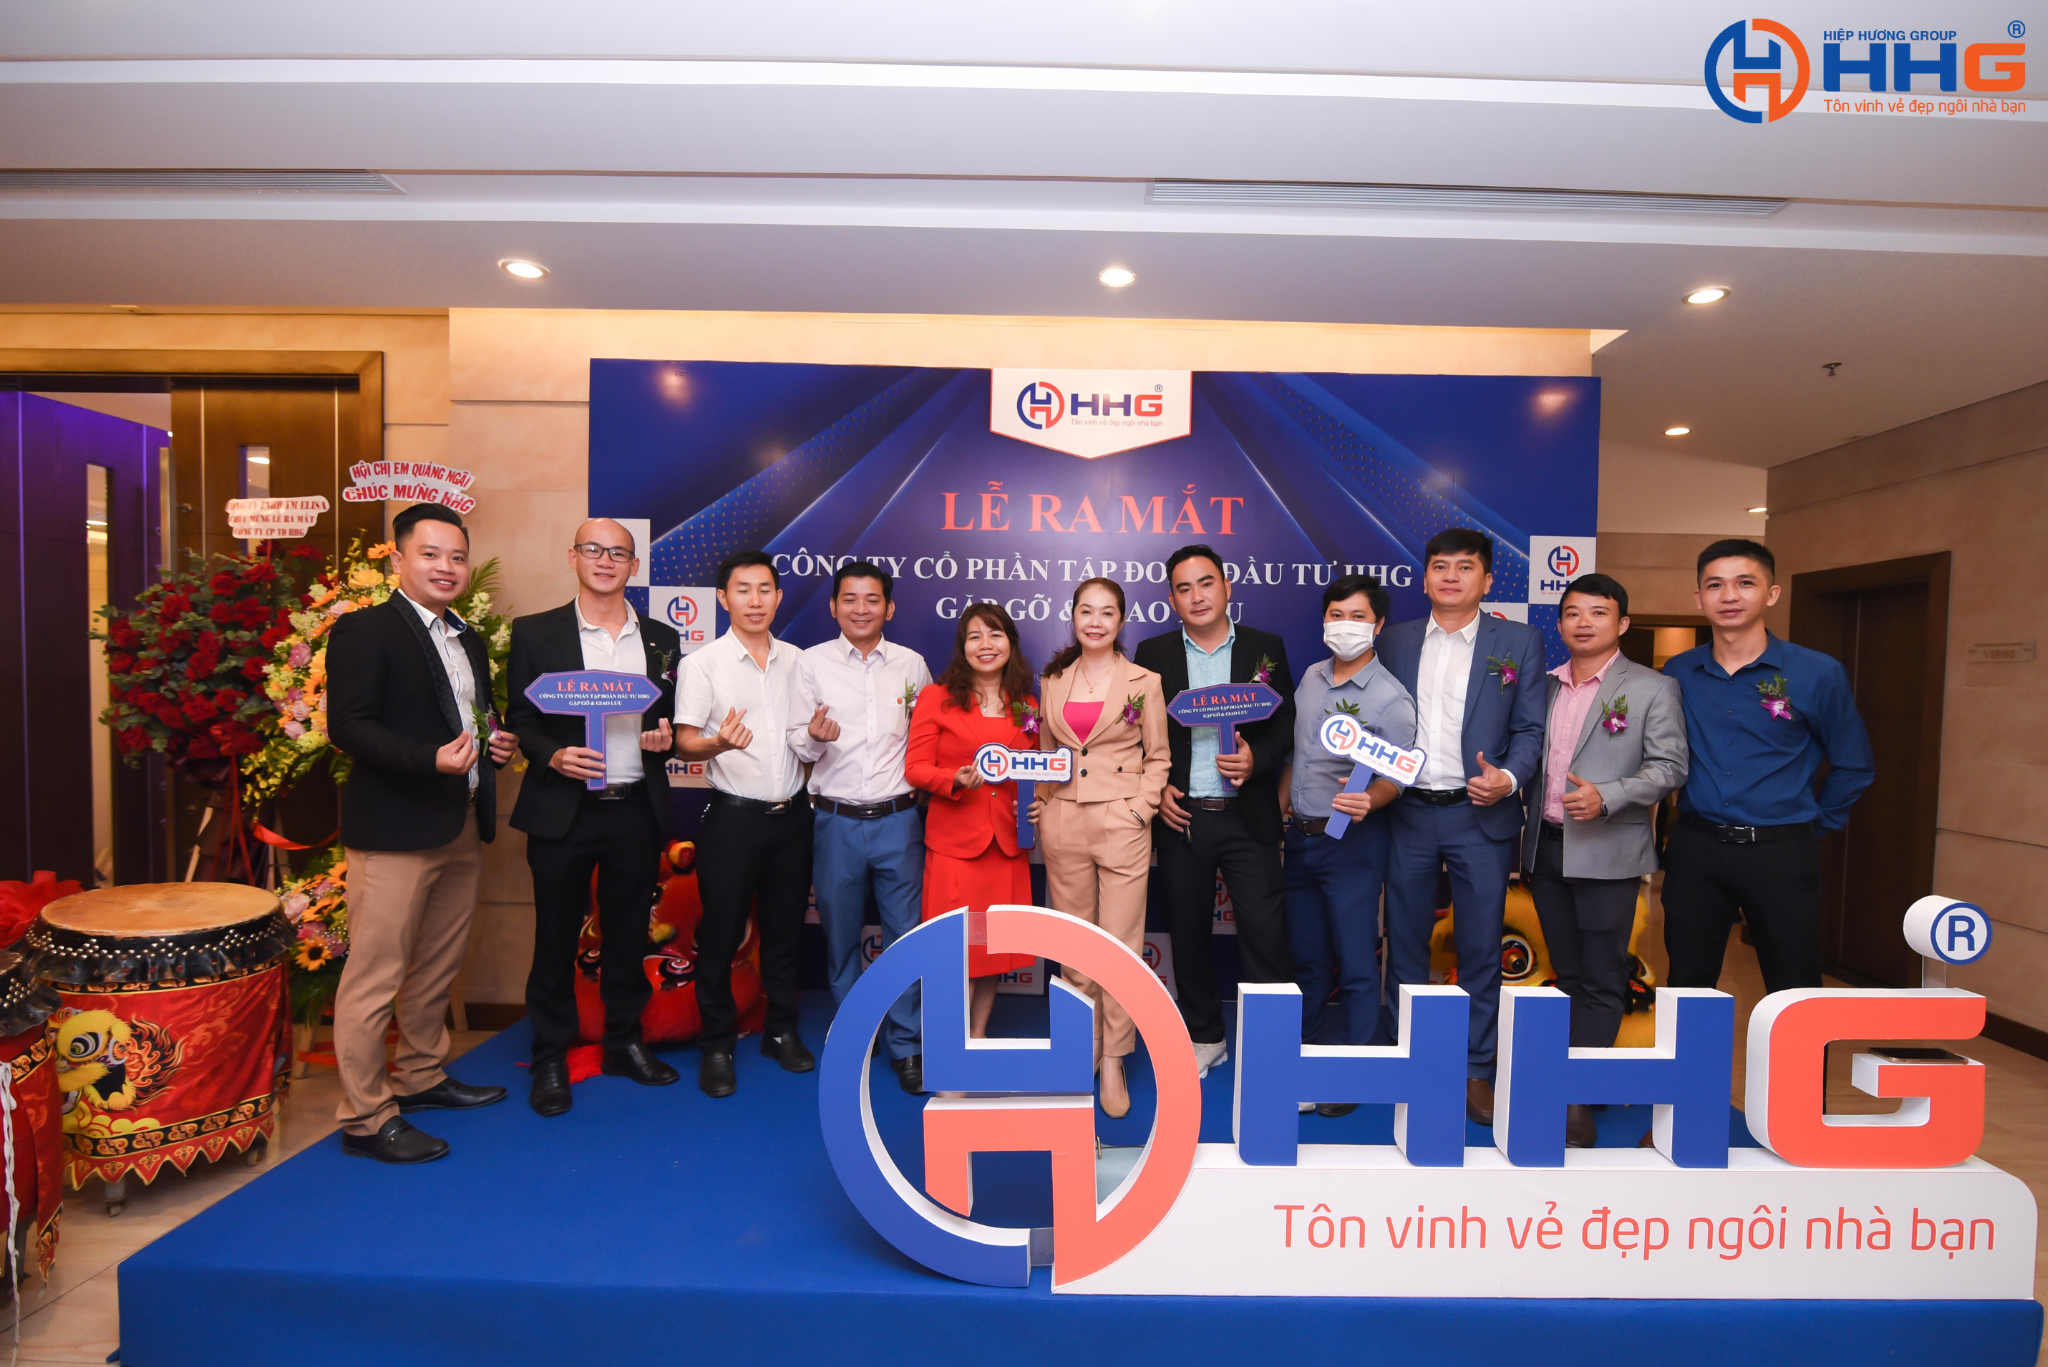 Ra mắt công ty cổ phần tập đoàn đầu tư HHG Group tại Đà Nẵng